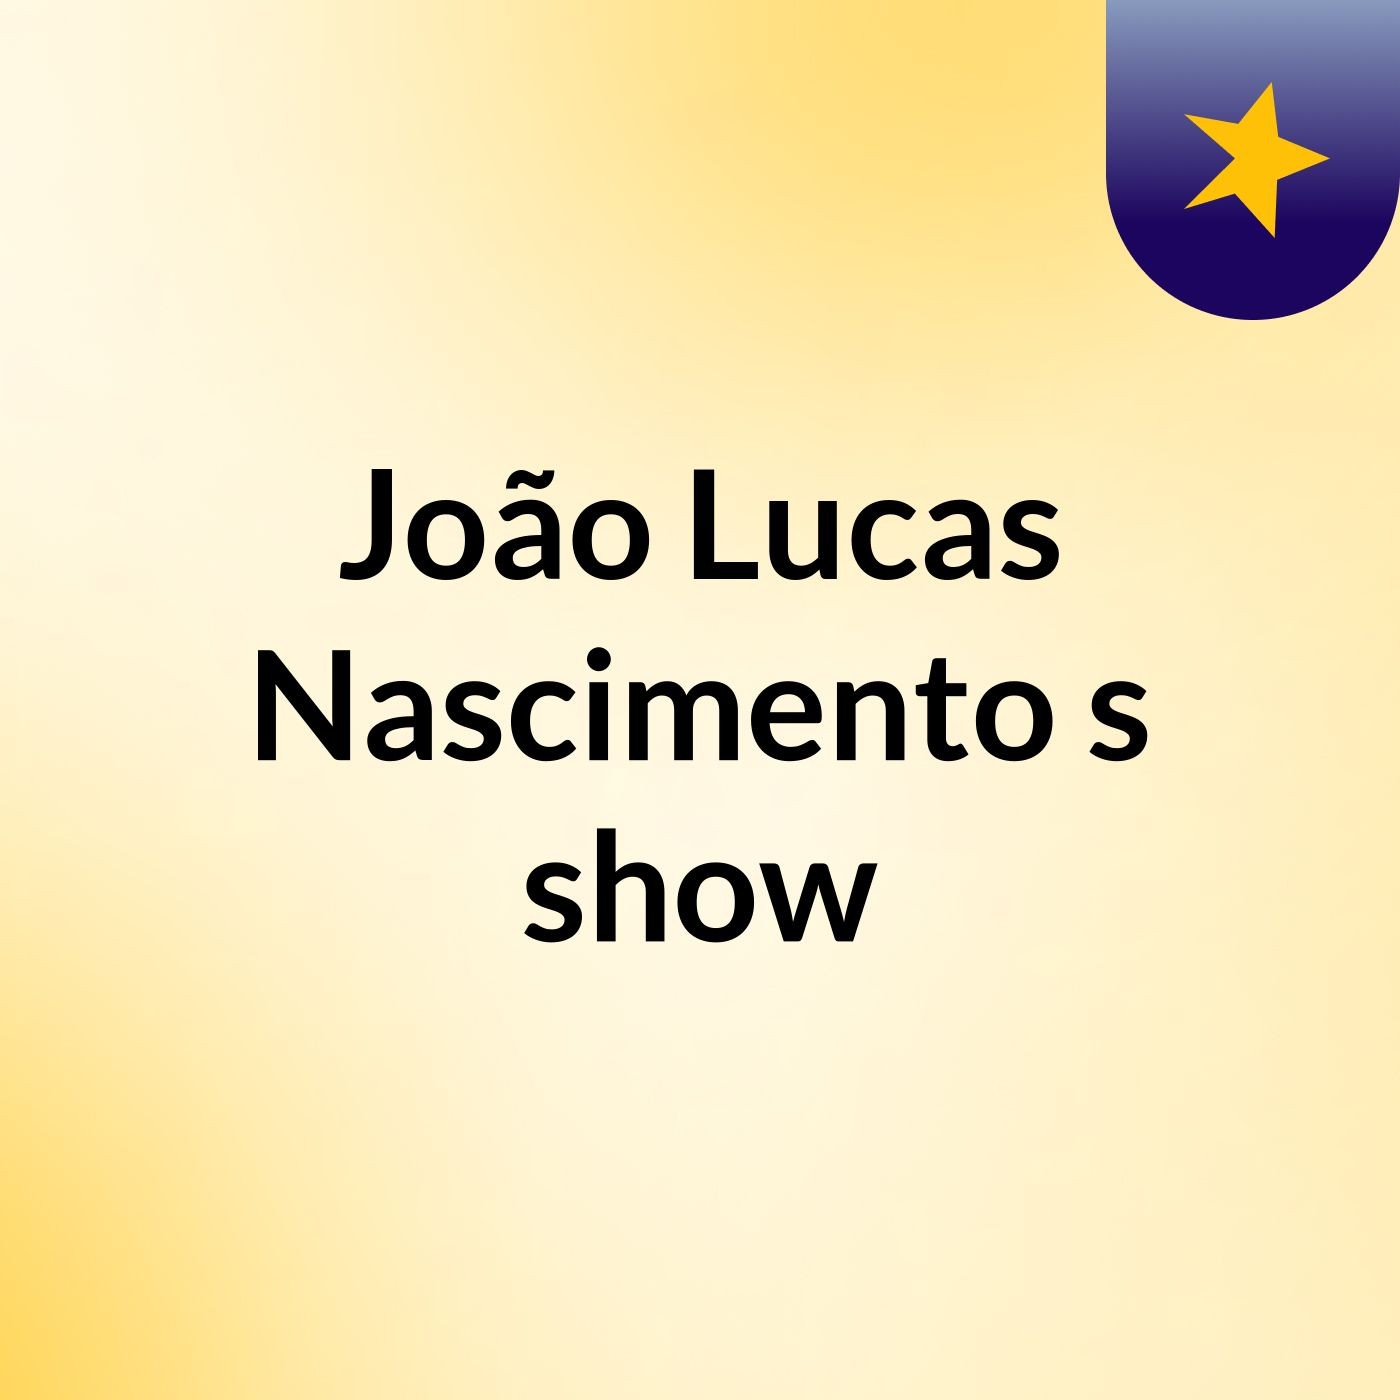 João Lucas Nascimento's show